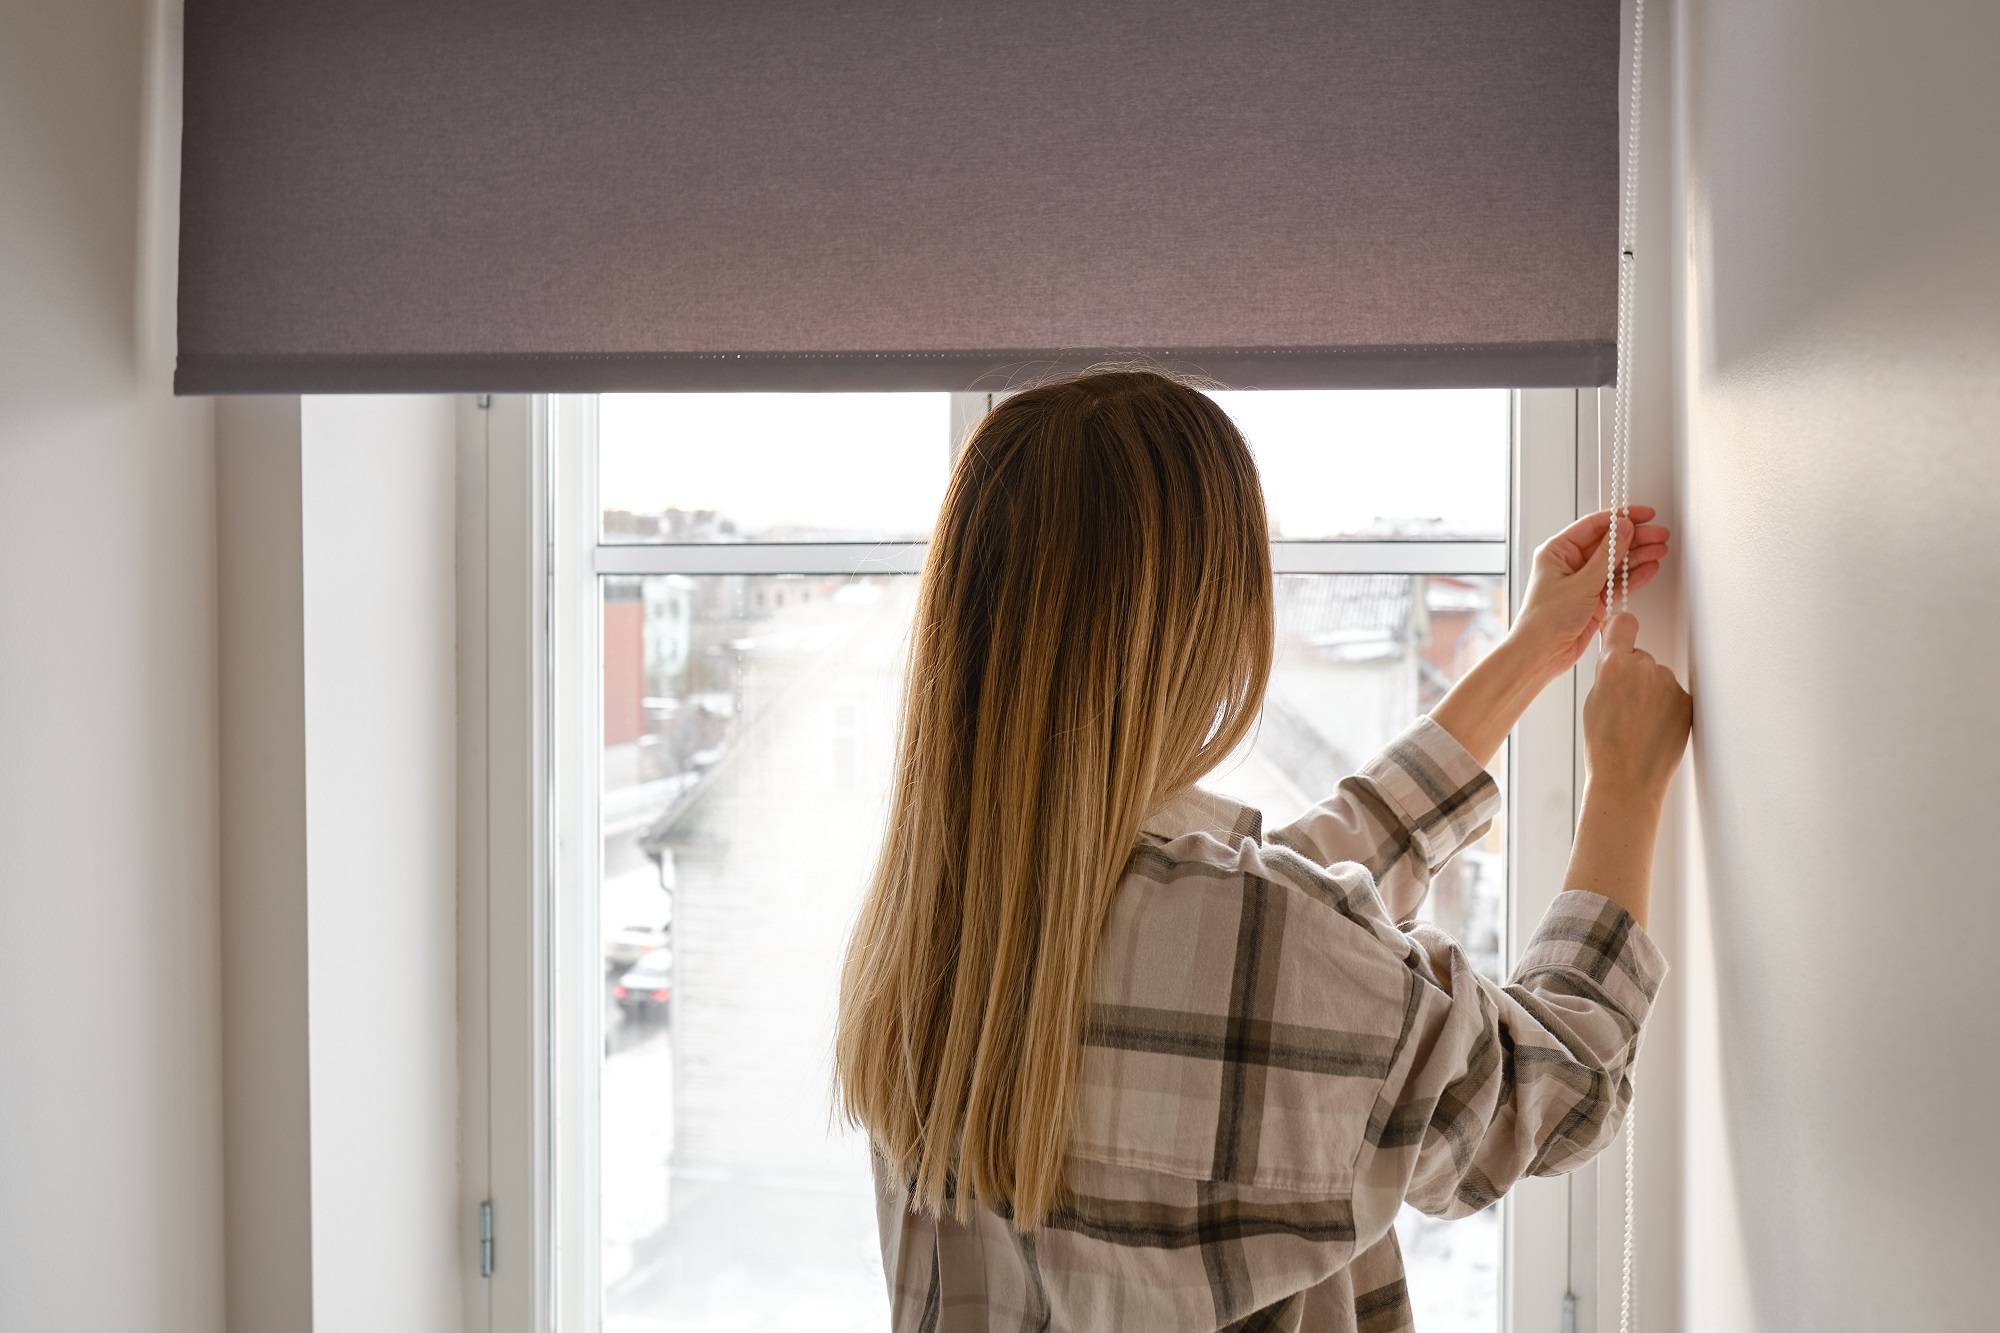 Zamykanie i zasłanianie okien rano to podstawowy trik na ochłodzenie temperatury w mieszkaniu